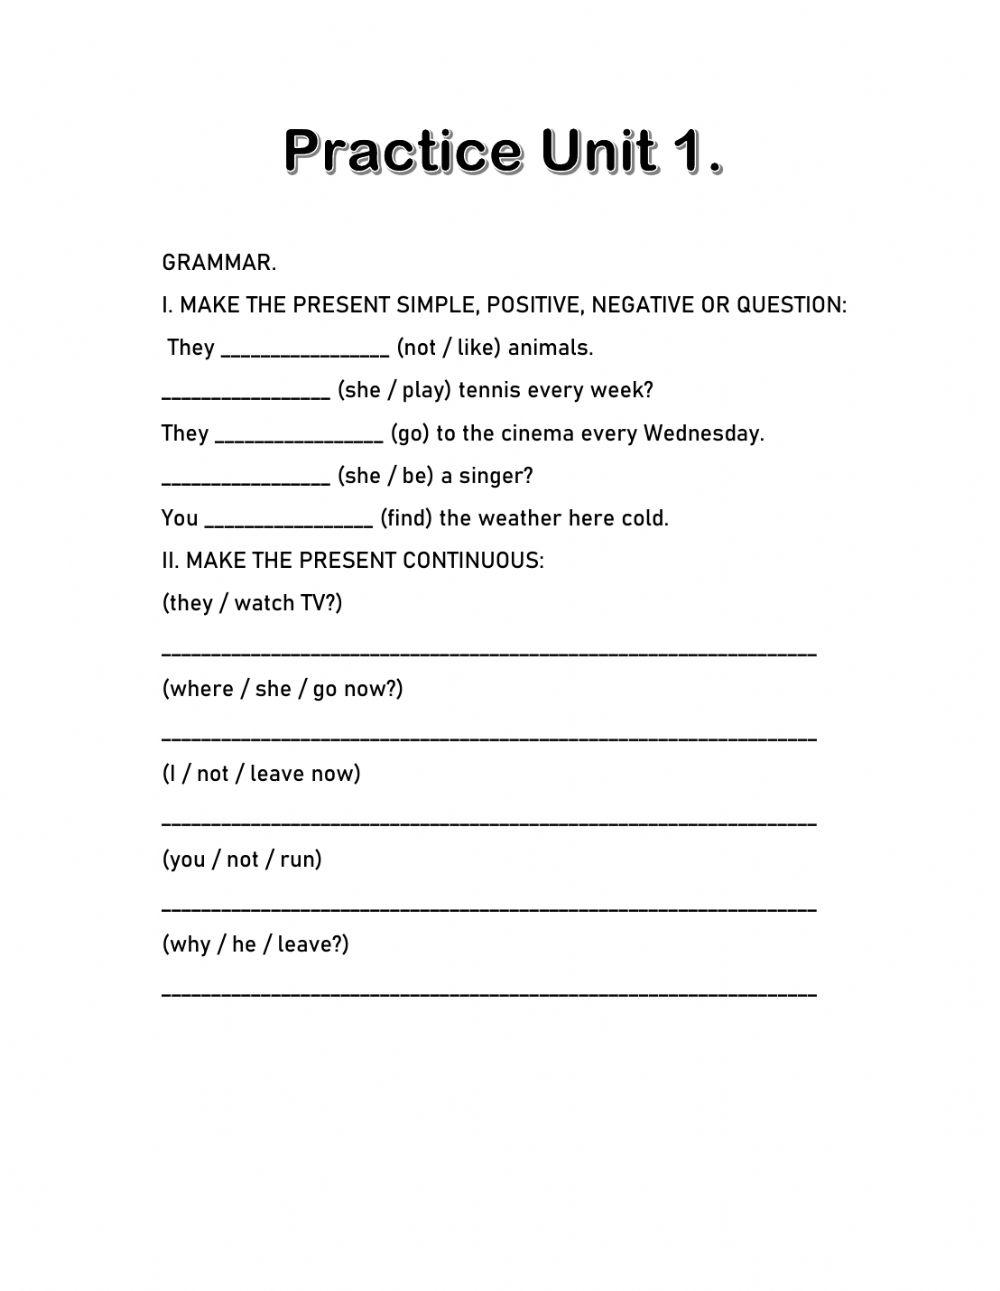 Practice Unit 1 DC4